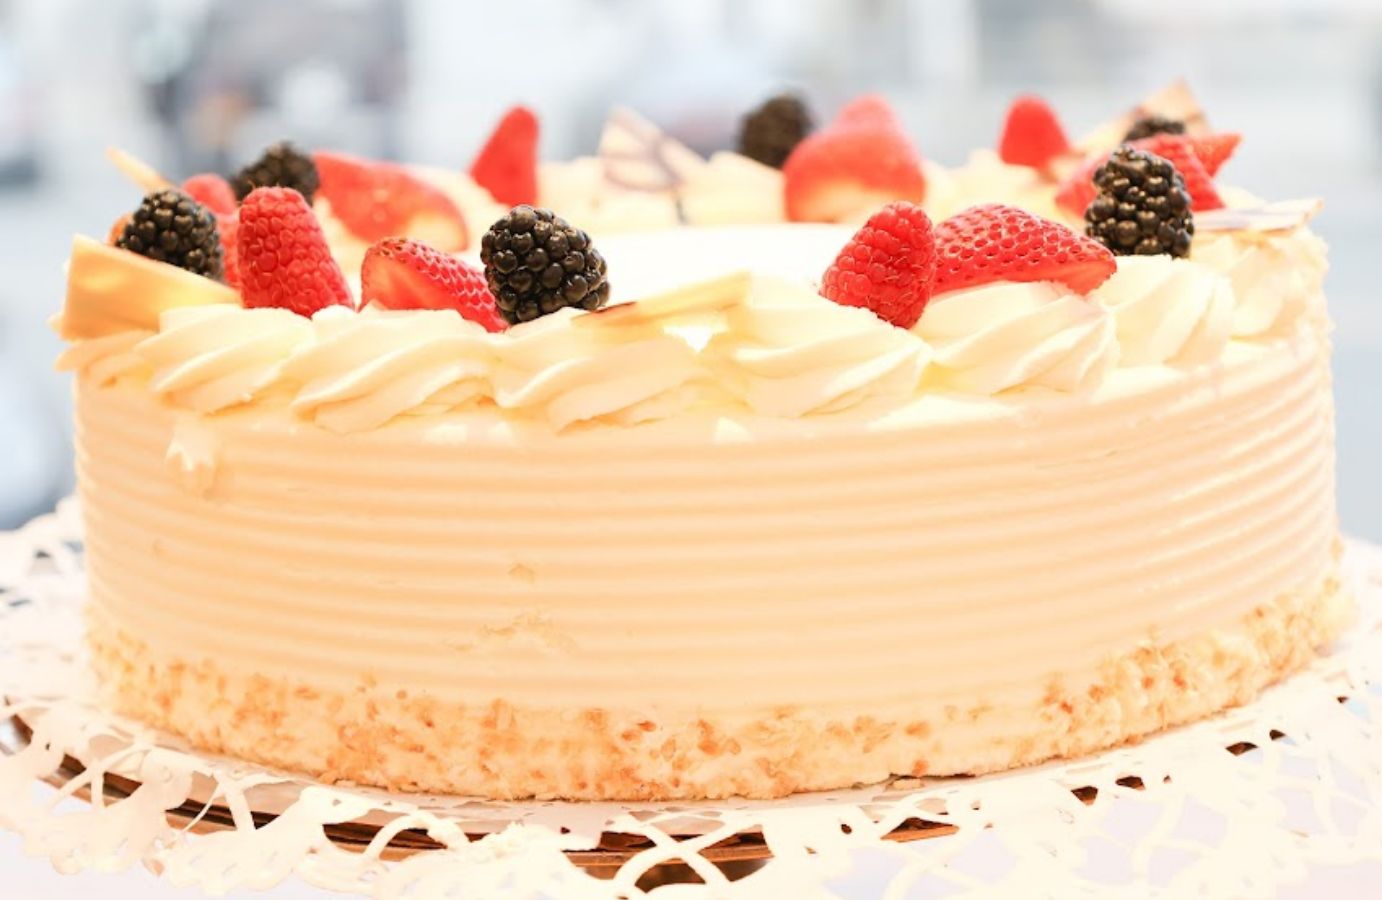 Closeup of a Strawberry Shortcake